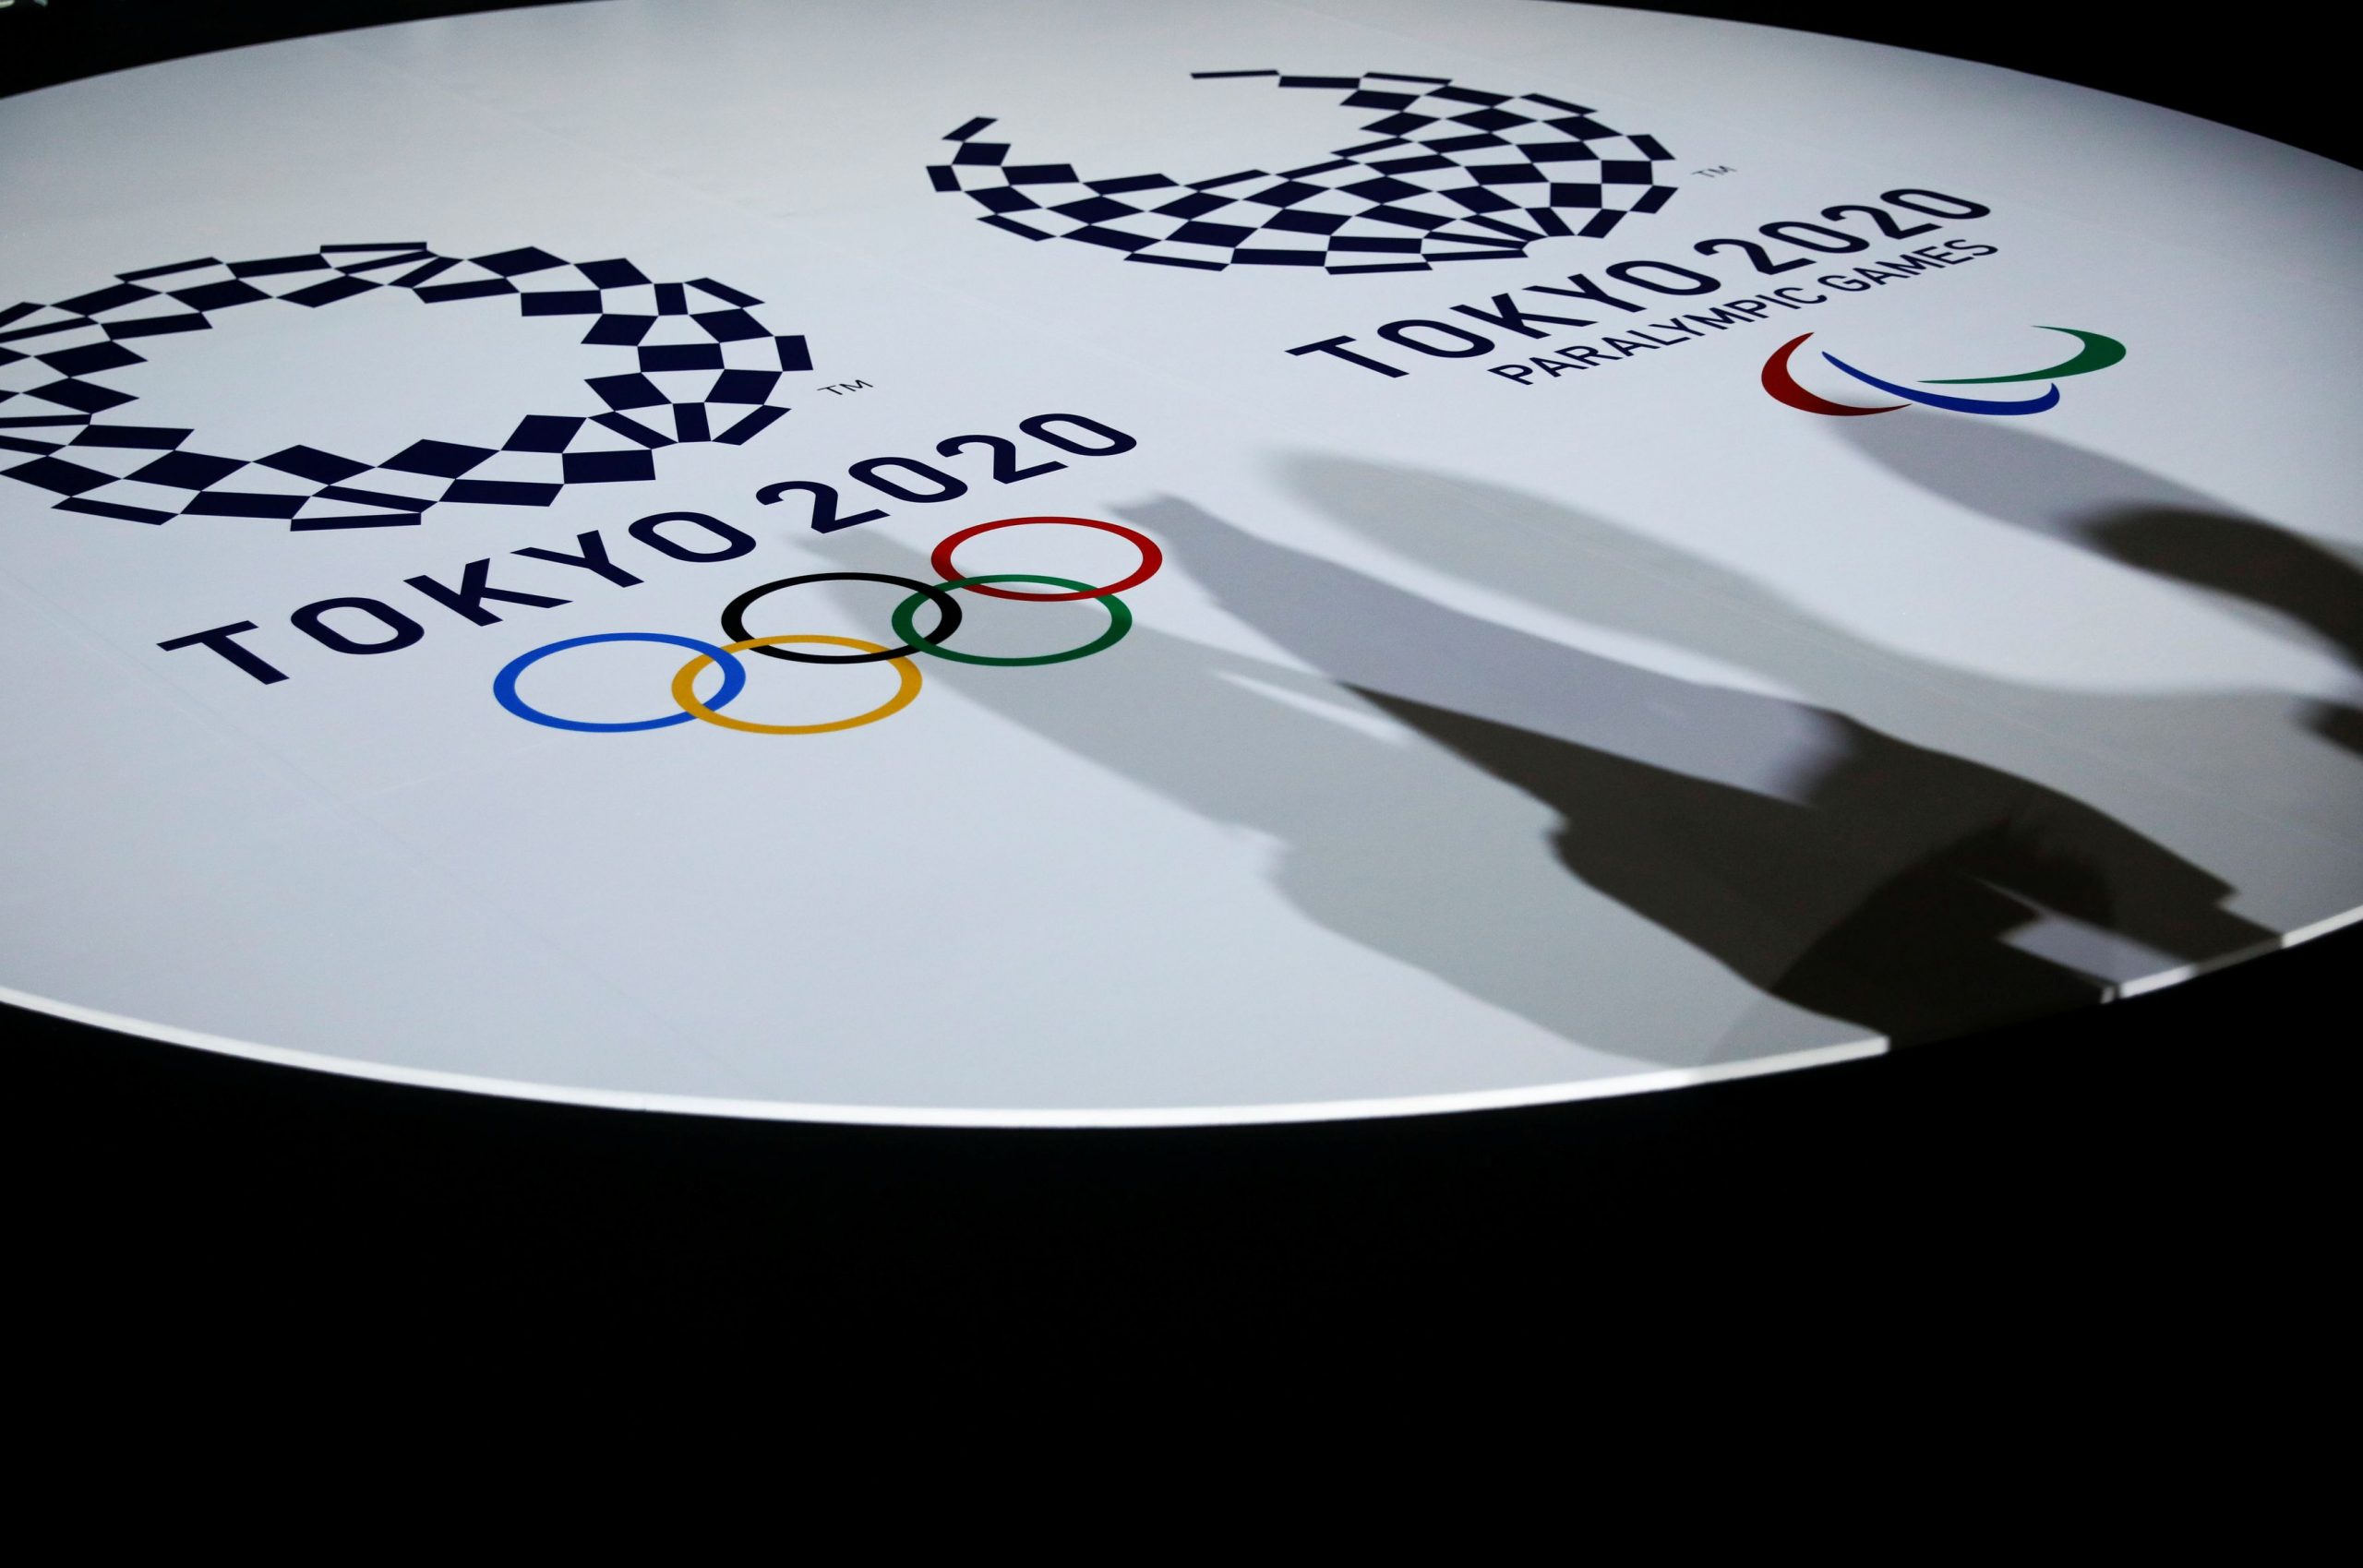 Ολυμπιακοί Αγώνες: Οι άδειες κερκίδες προκαλούν απώλειες 800 εκατ. δολ.